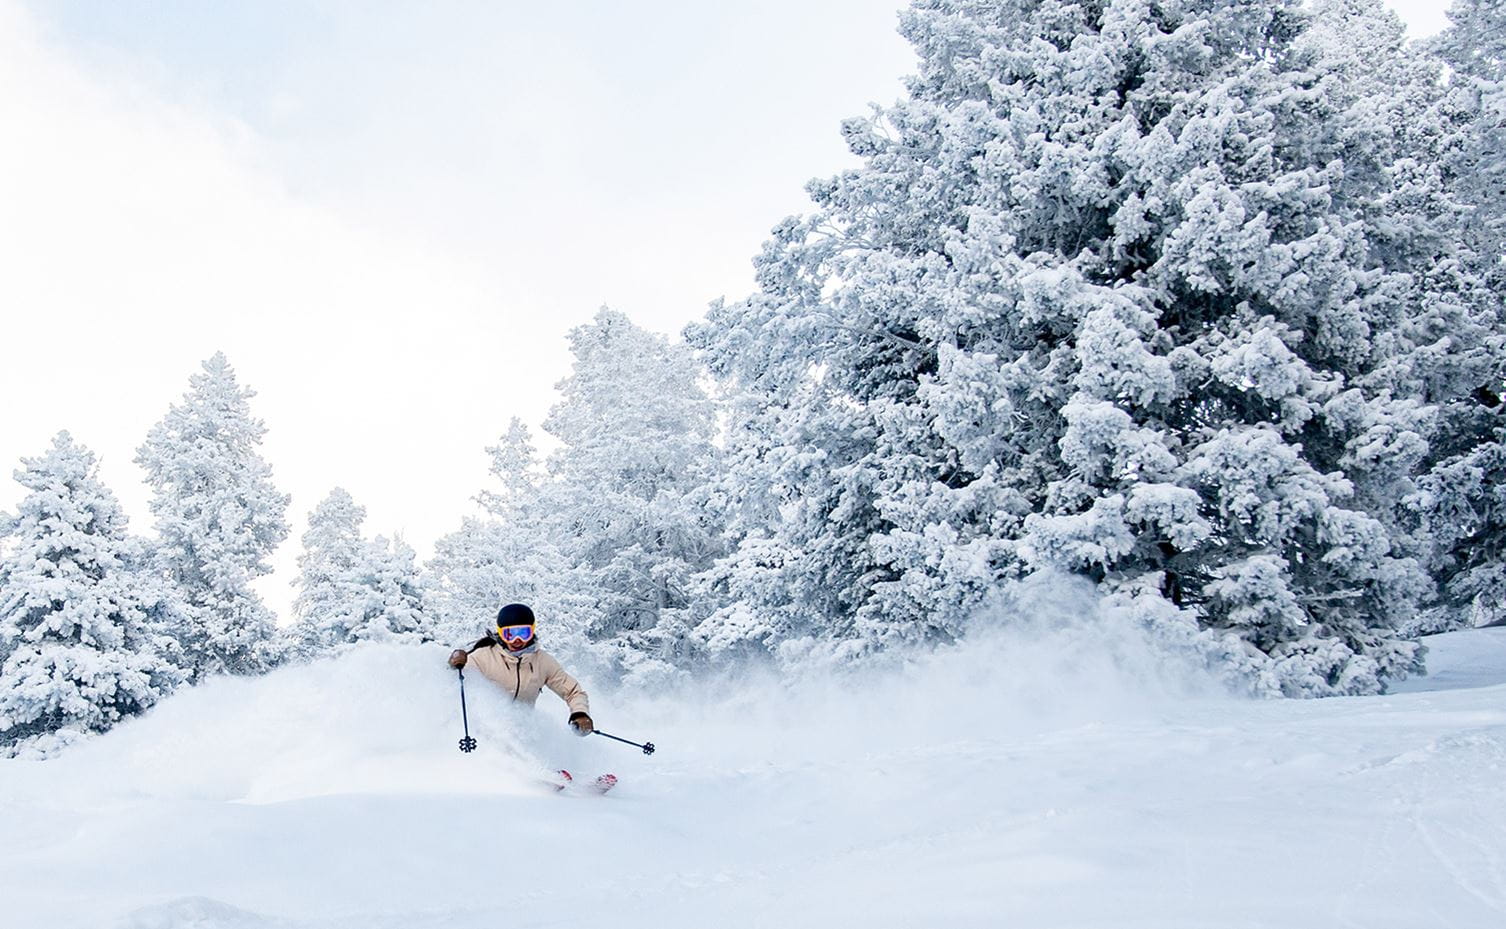 A skier rides through deep powder high up on Snowmass